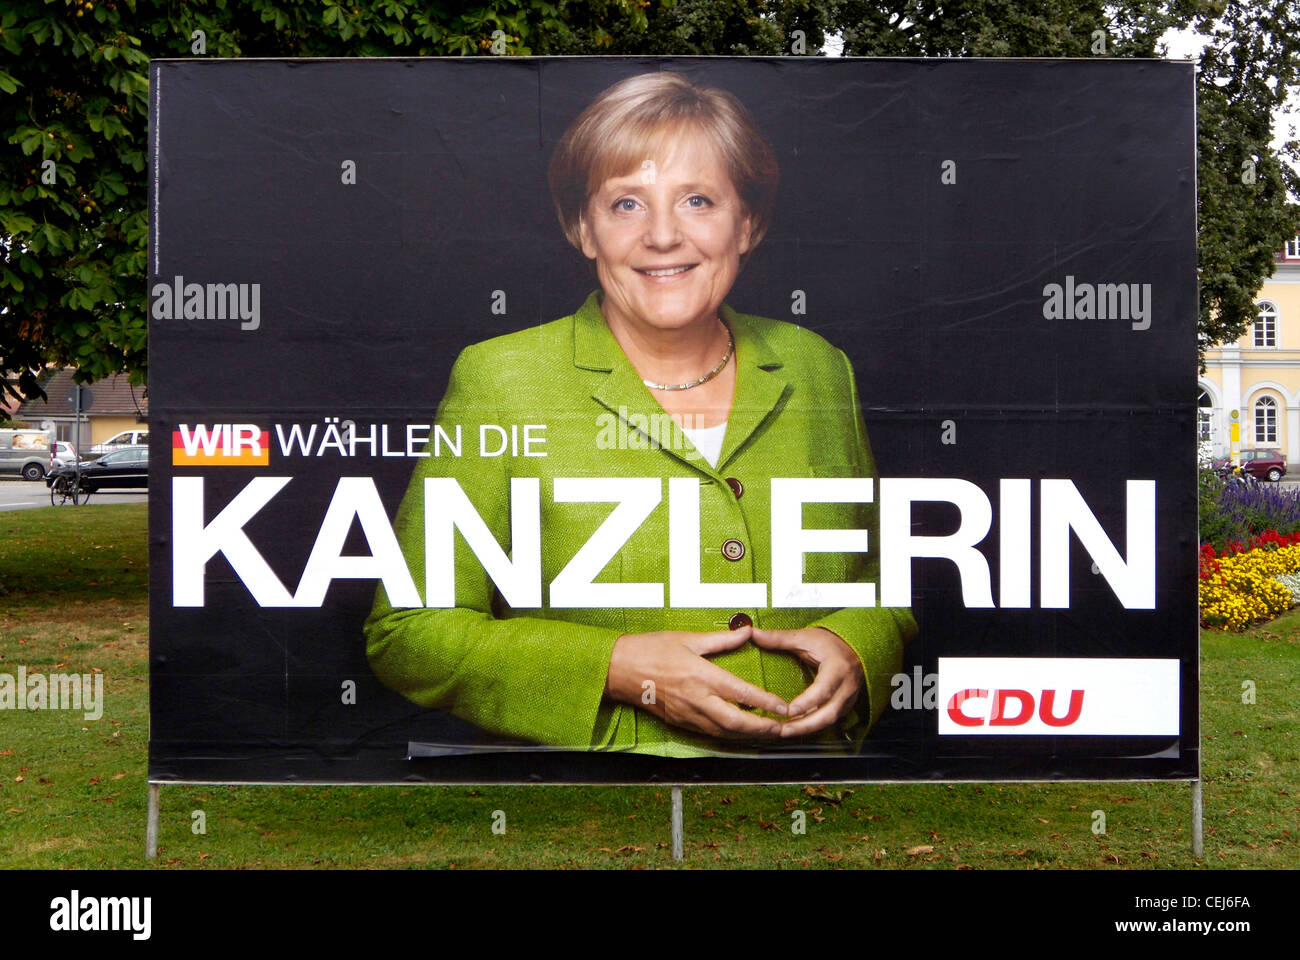 Cartellone elettorale del partito tedesco CDU per Angela Merkel al Bundestag elezioni del 2009. Foto Stock